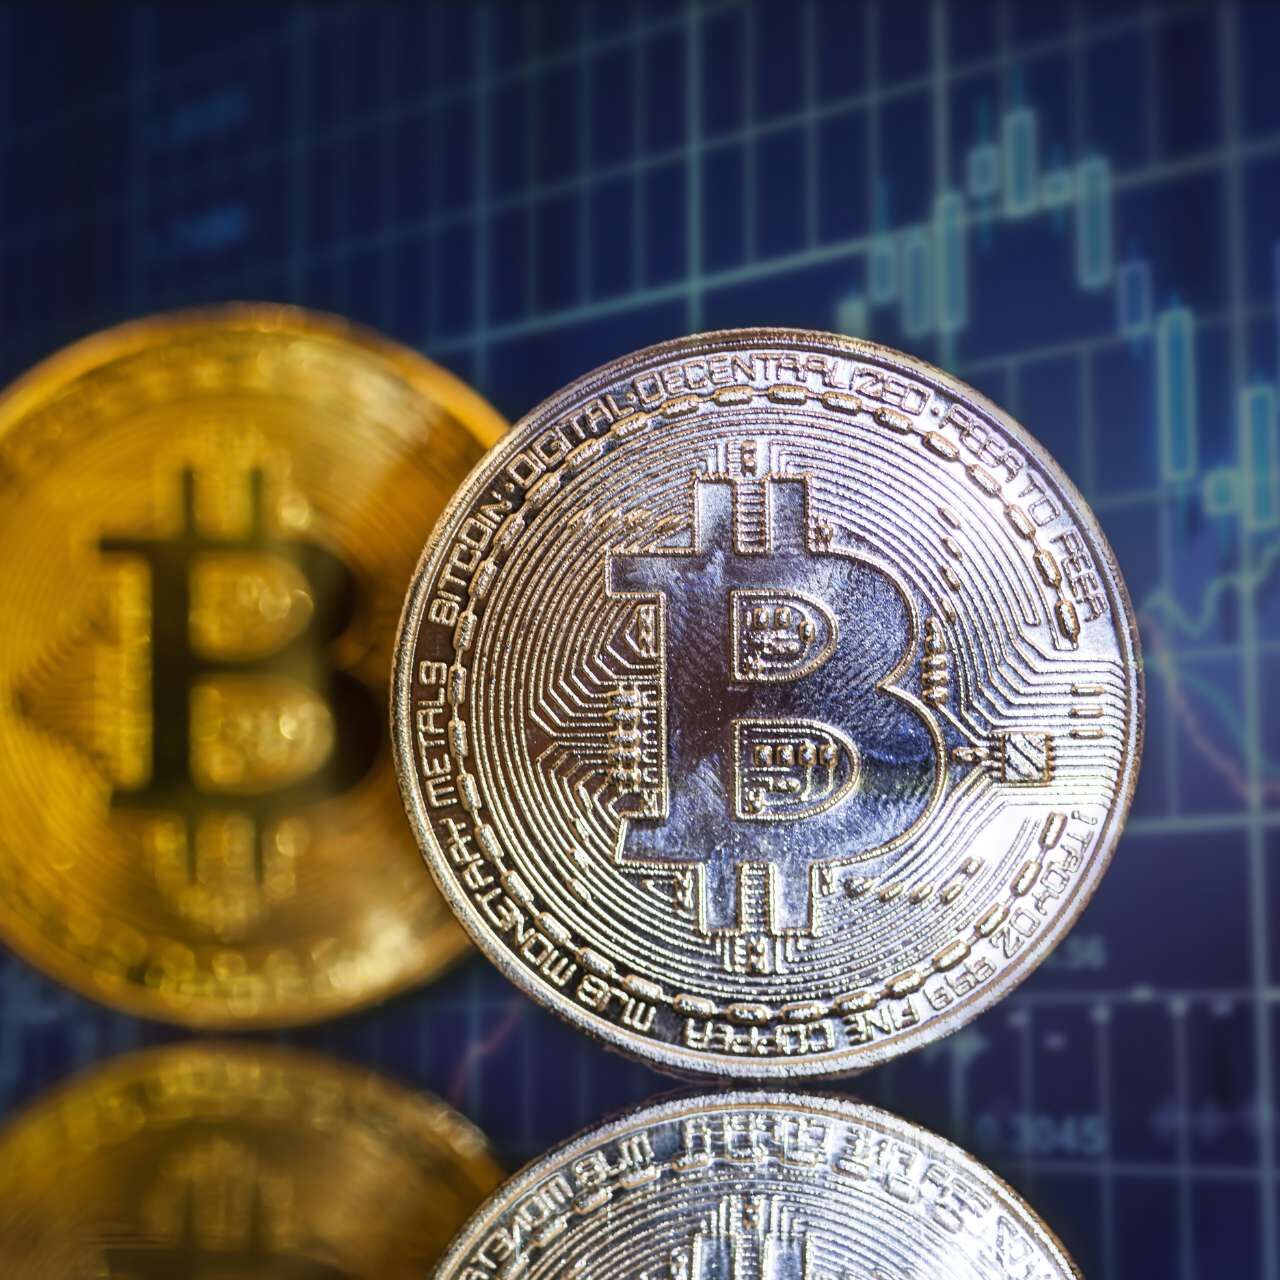 Tiền điện tử Golden Bitcoin, một khái niệm mới về tiền ảo